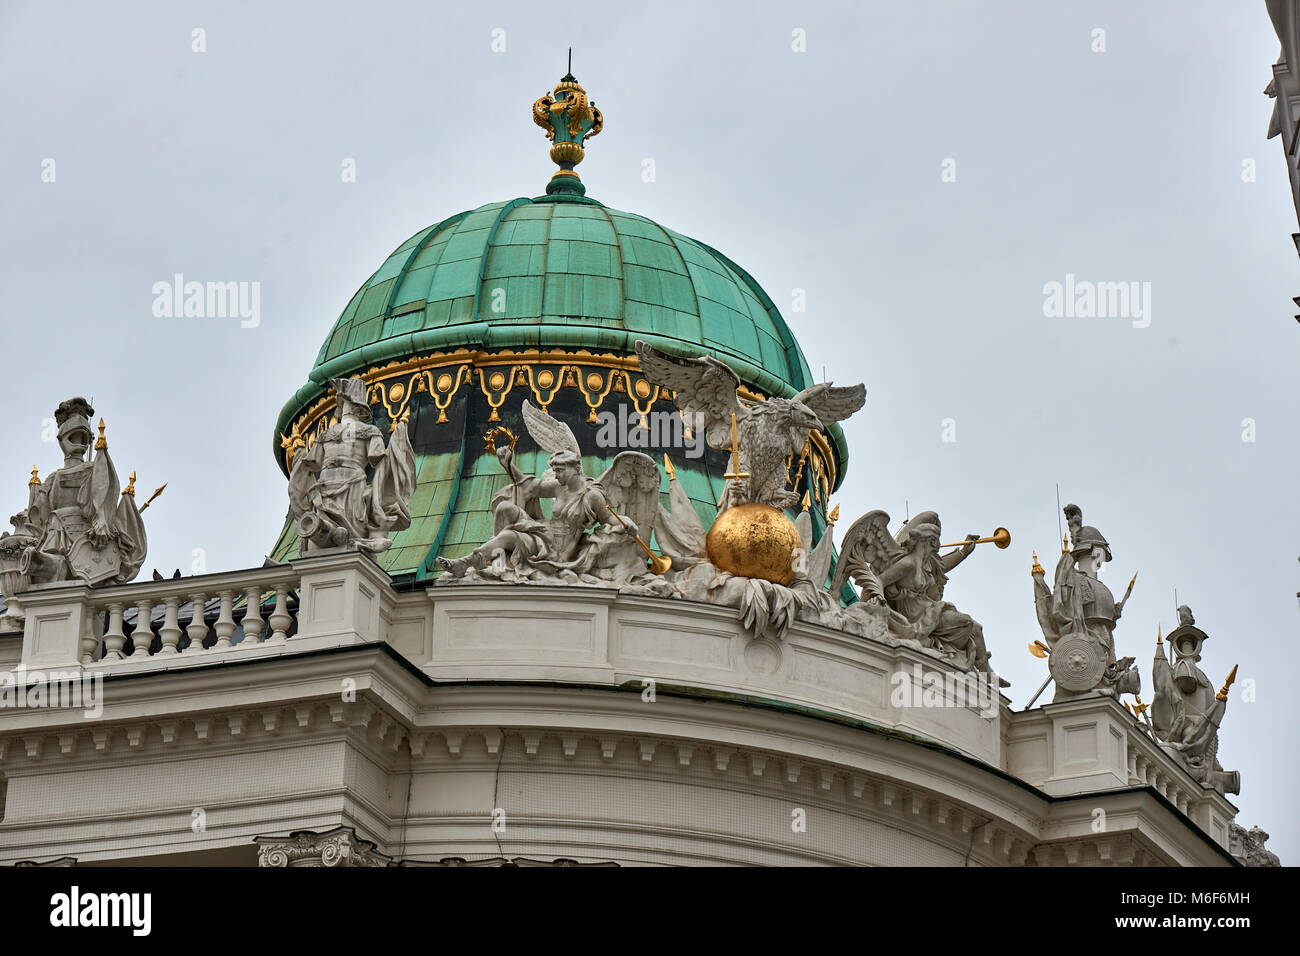 Techo abovedado adornado y estatuas en el techo del Palacio Imperial Hofburg Viena ala St Michael's Foto de stock